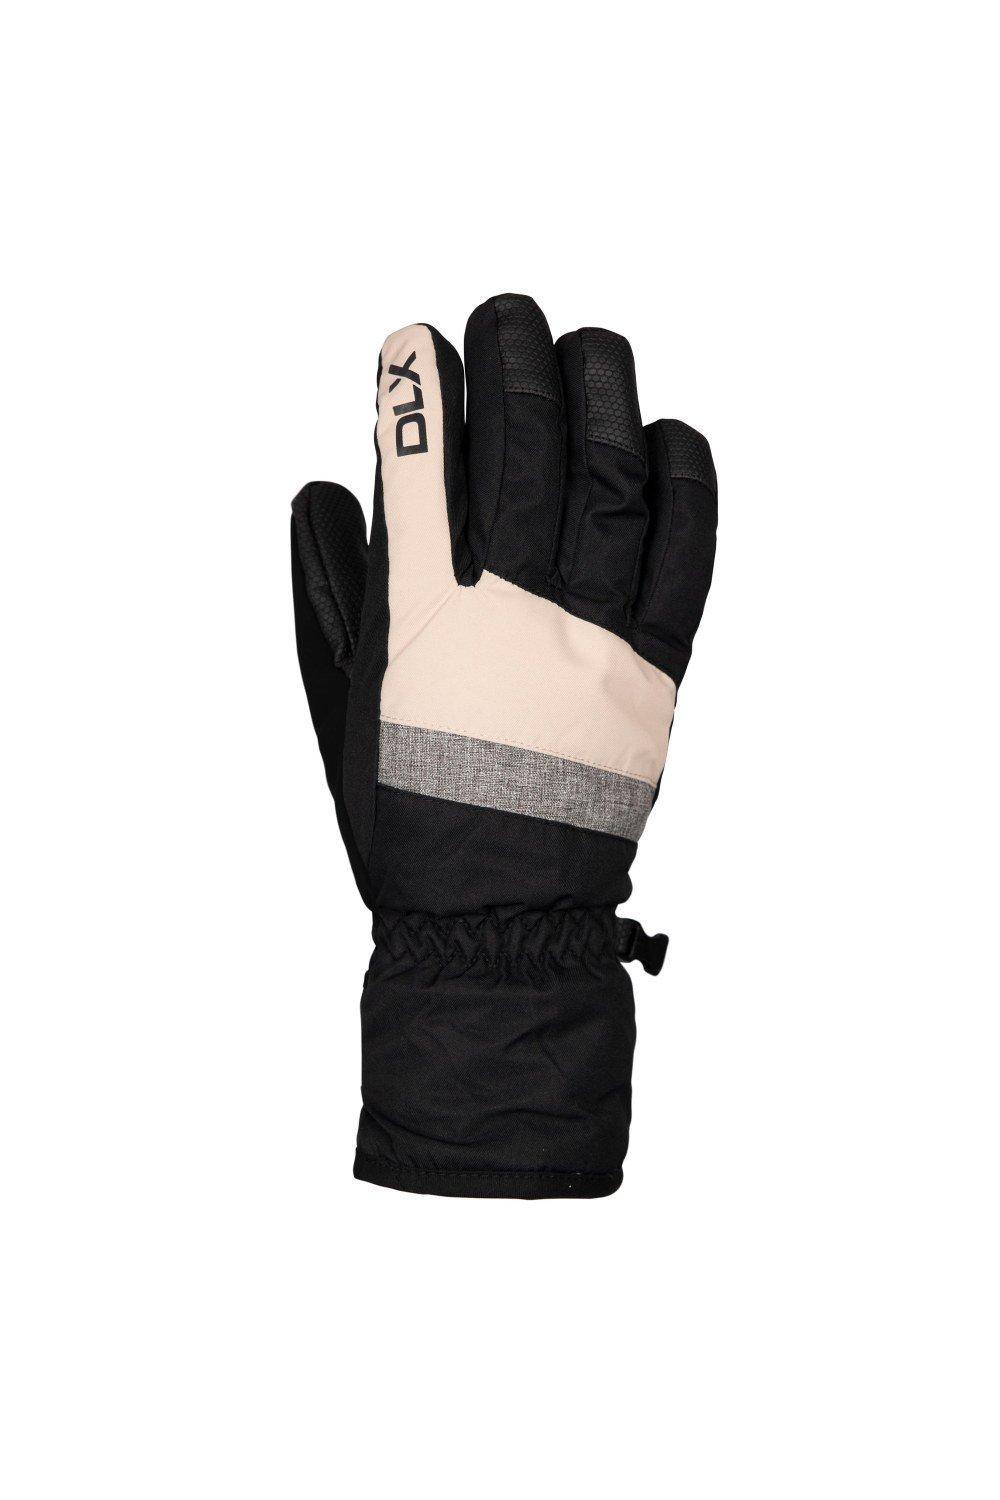 Jarol Ski Gloves